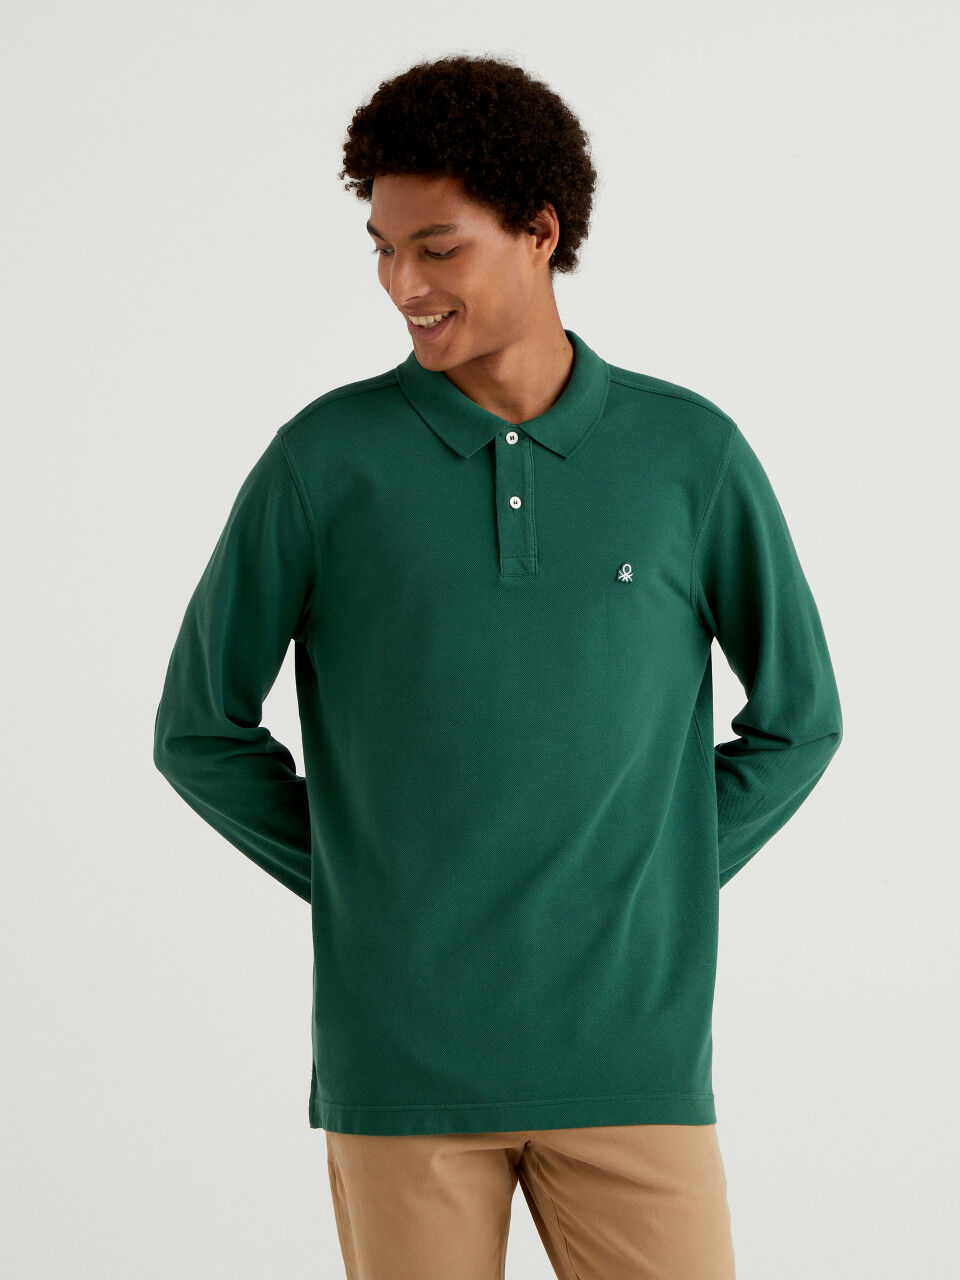 United Colors of Benetton H/S Shirt Polo para Niñas 